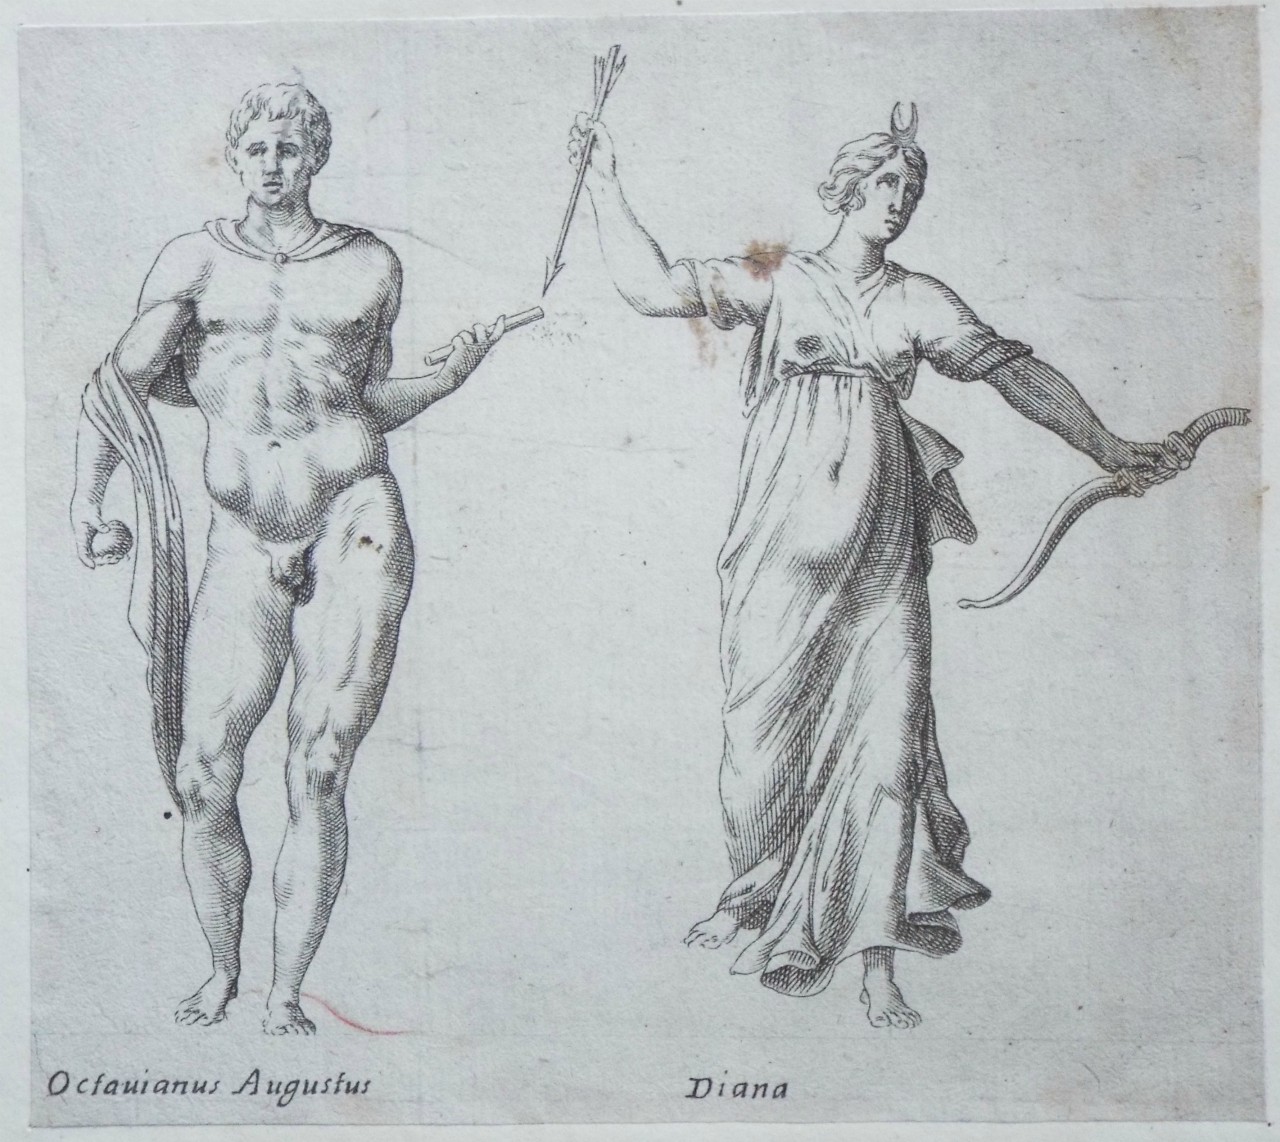 Etching - Octavianus Augustus 
Diana